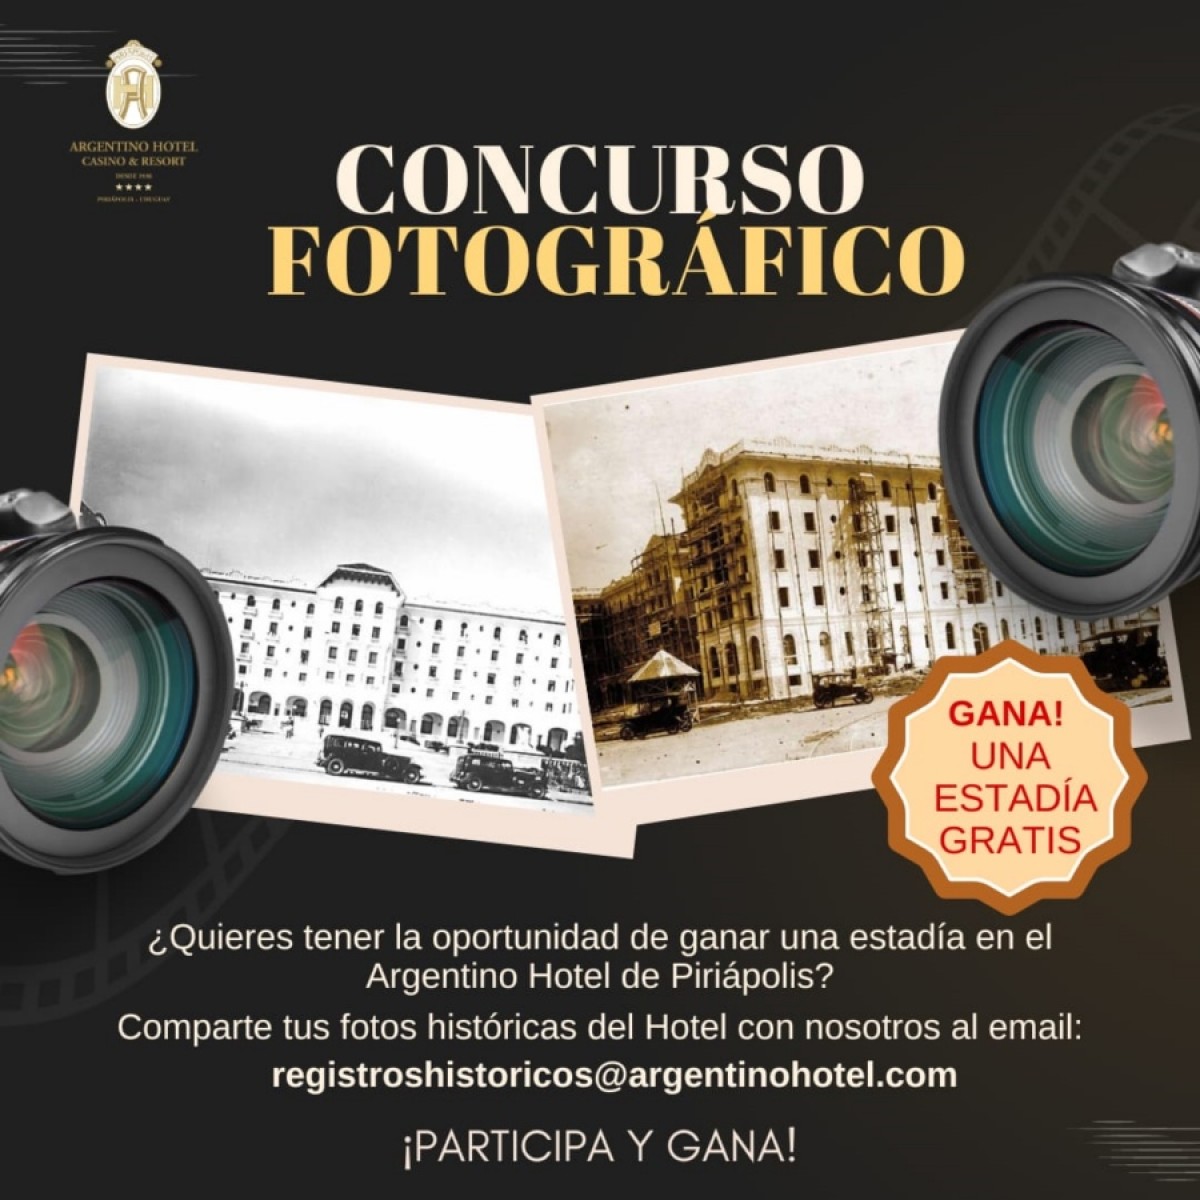 Concurso fotográfico del Argentino Hotel de Piriápolis